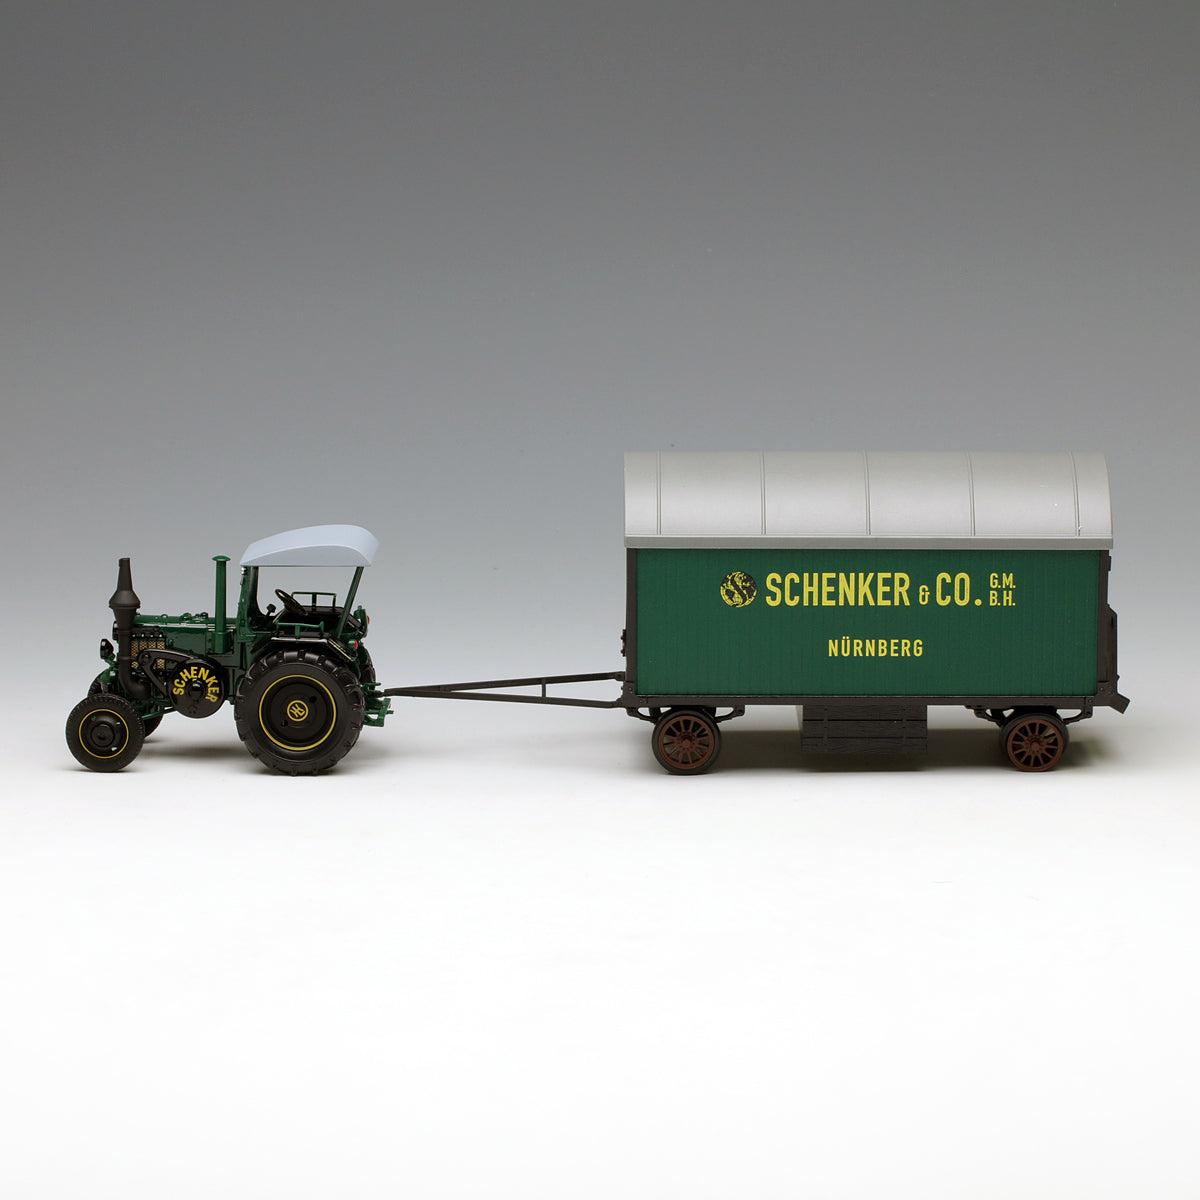 Schuco 1:32 Lanz Bulldog D9506 Tractor with Trailer Schenker & Co. Nurnberg 450769700